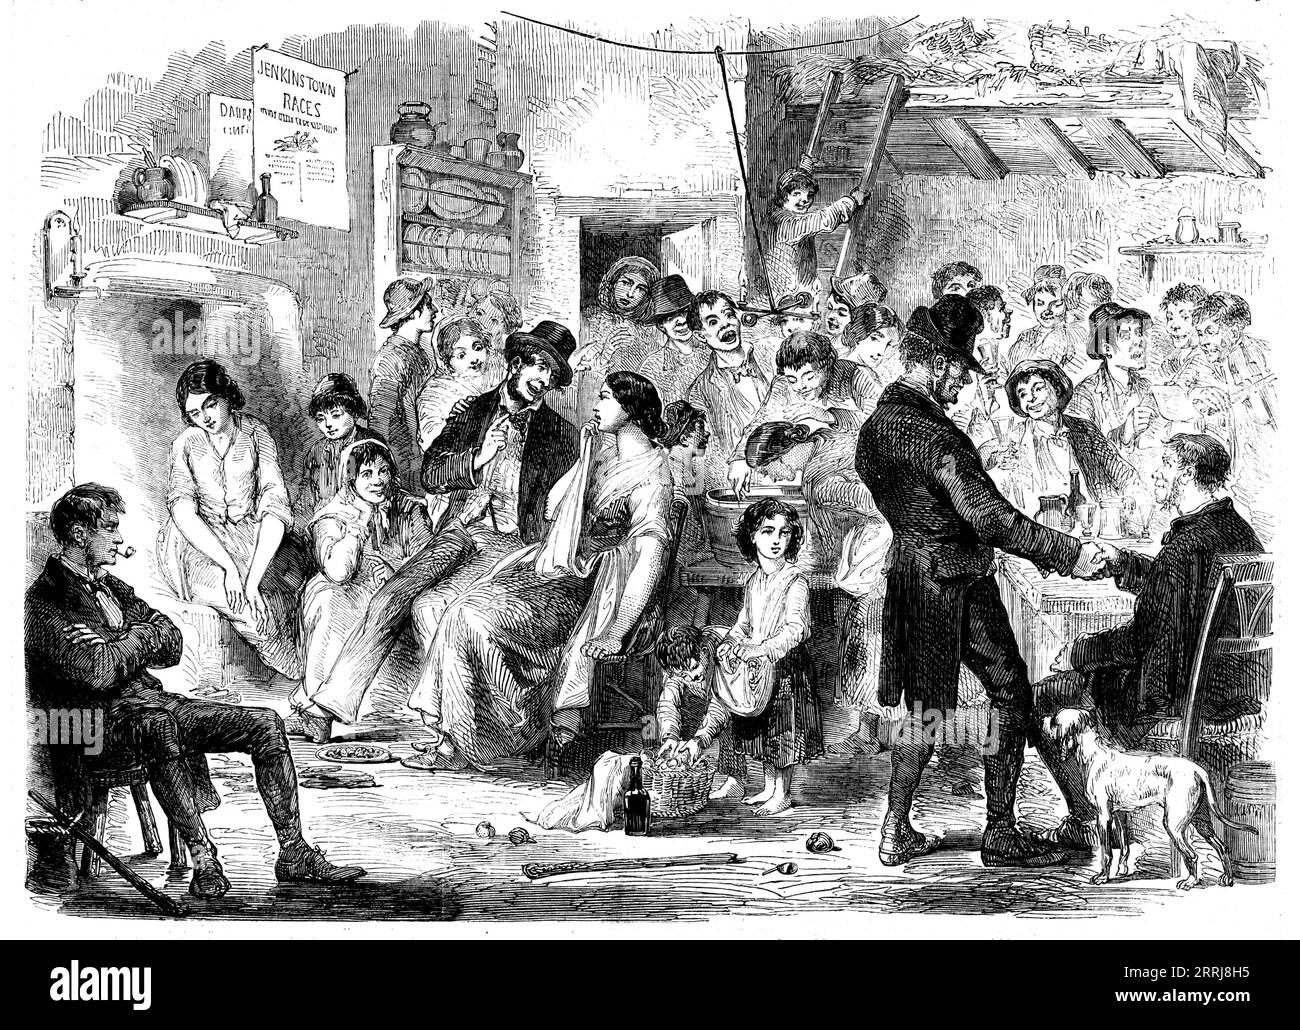 Allhallow-Eve - eine Skizze in Kilkenny von Edmund Fitzpatrick, 1858. "Allhallow-Eve (1. November)... ist die Nacht aller anderen, in der die irische Bauernschaft glaubt, dass Geister, Hexen und Feen, aber vor allem die zweifelhafte phoca, so fleißig sind, Streiche gegen unvorsichtige Reisende zu spielen. und diese übernatürlichen Ereignisse, die von solchen Abenteurern erzählt werden, bilden Themen für Klatsch an vielen Hütten, die für viele eine lange Nacht am Kamin stehen. Es ist daher nicht verwunderlich, dass dieser Abend von diesem einfallsreichen Volk auf festlichere Art und Weise verbracht werden sollte als jeder andere... Eine Sammlung Stockfoto